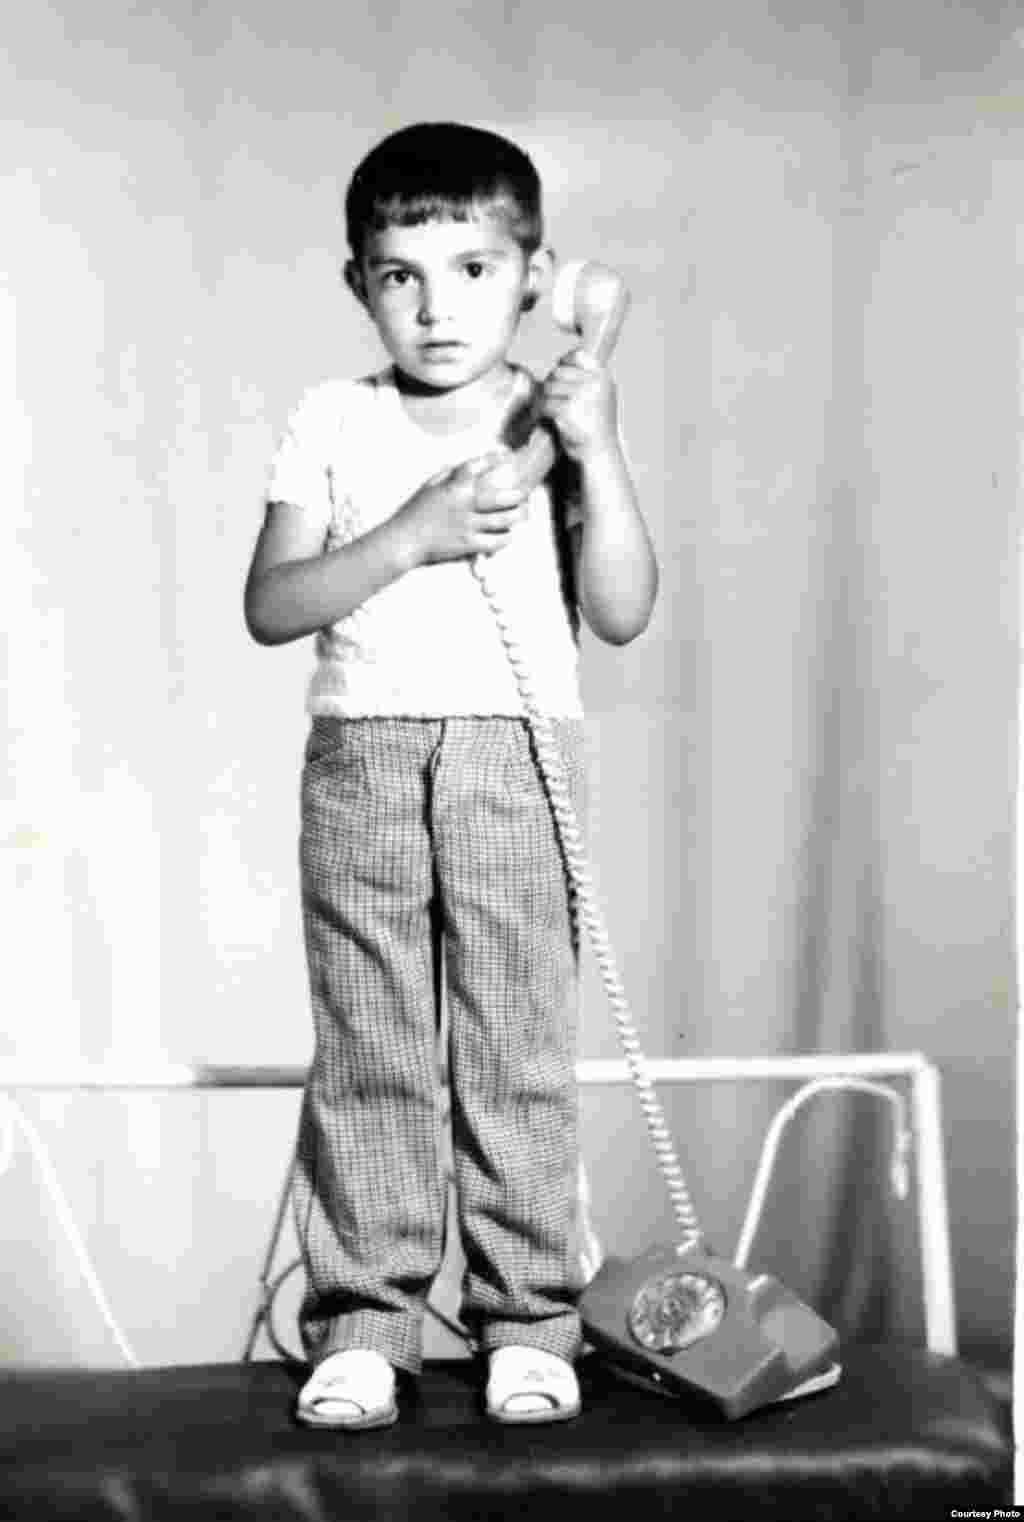 Marin Alla în vârstă de 8 ani. Călărași, circa 1985